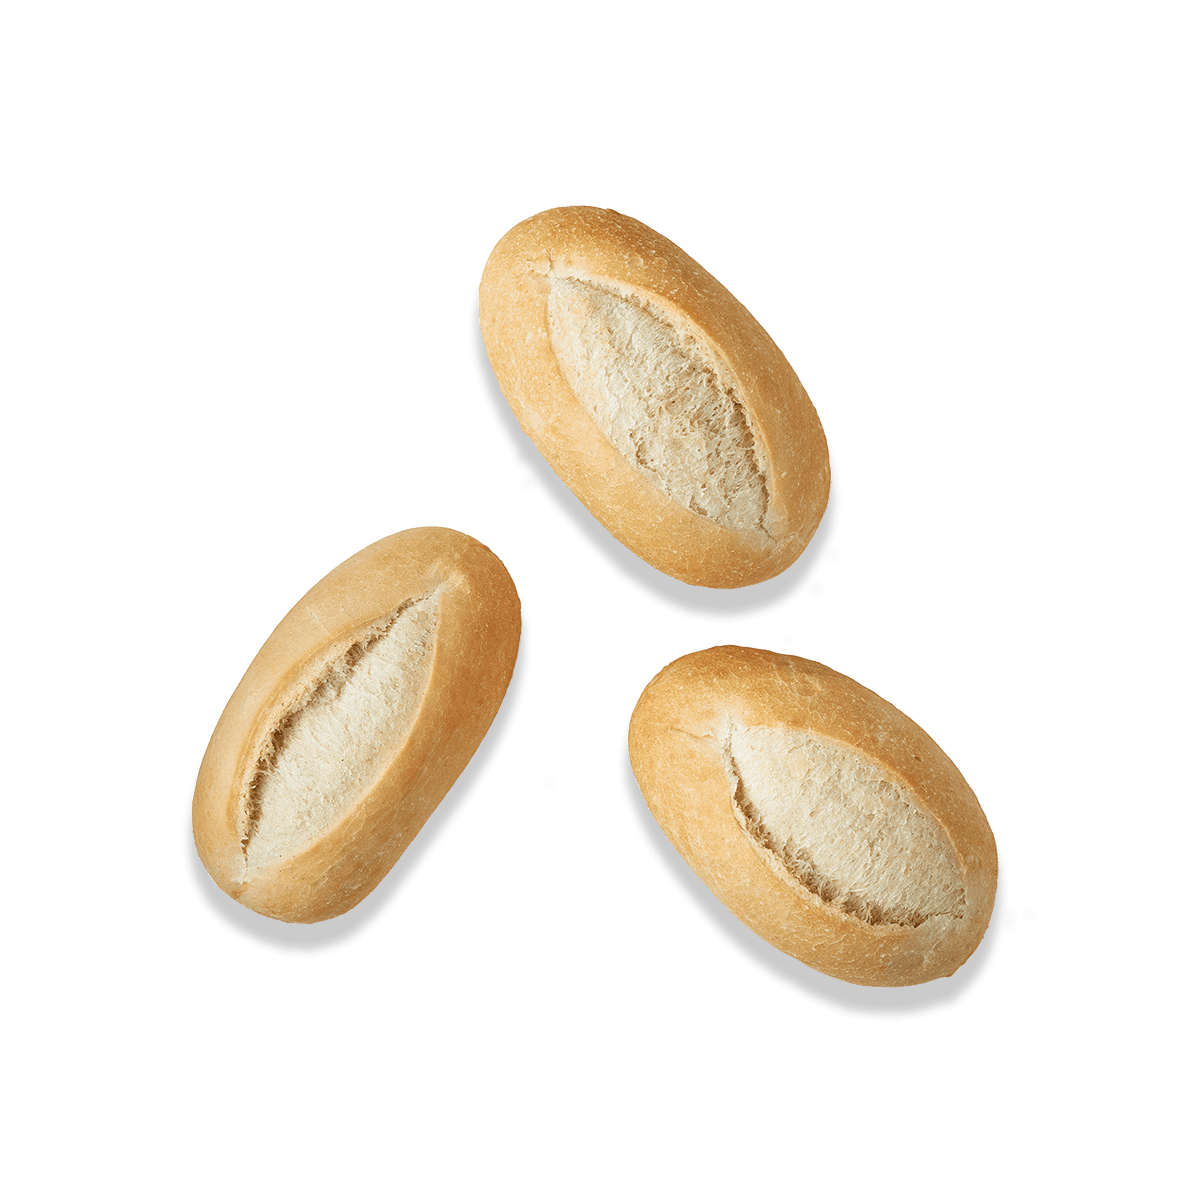 trois petits pains français vue de haut